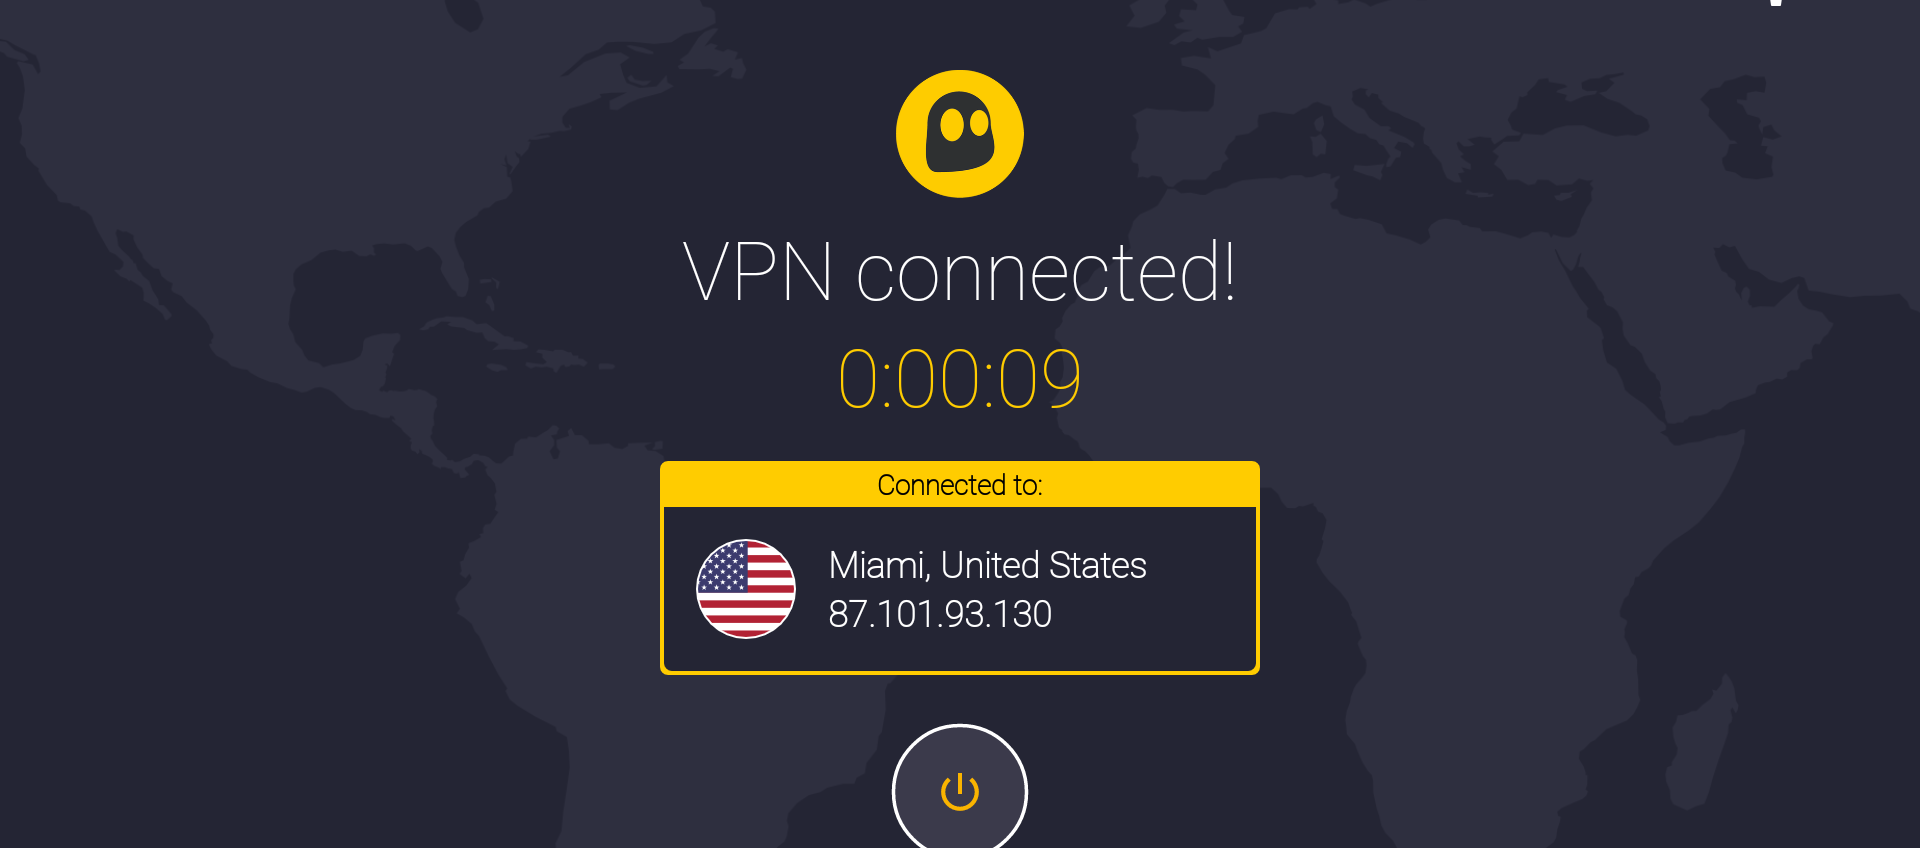 VPN sicura e veloce per tutto il 2023: con l'offerta di CyberGhost bastano 2 euro al mese